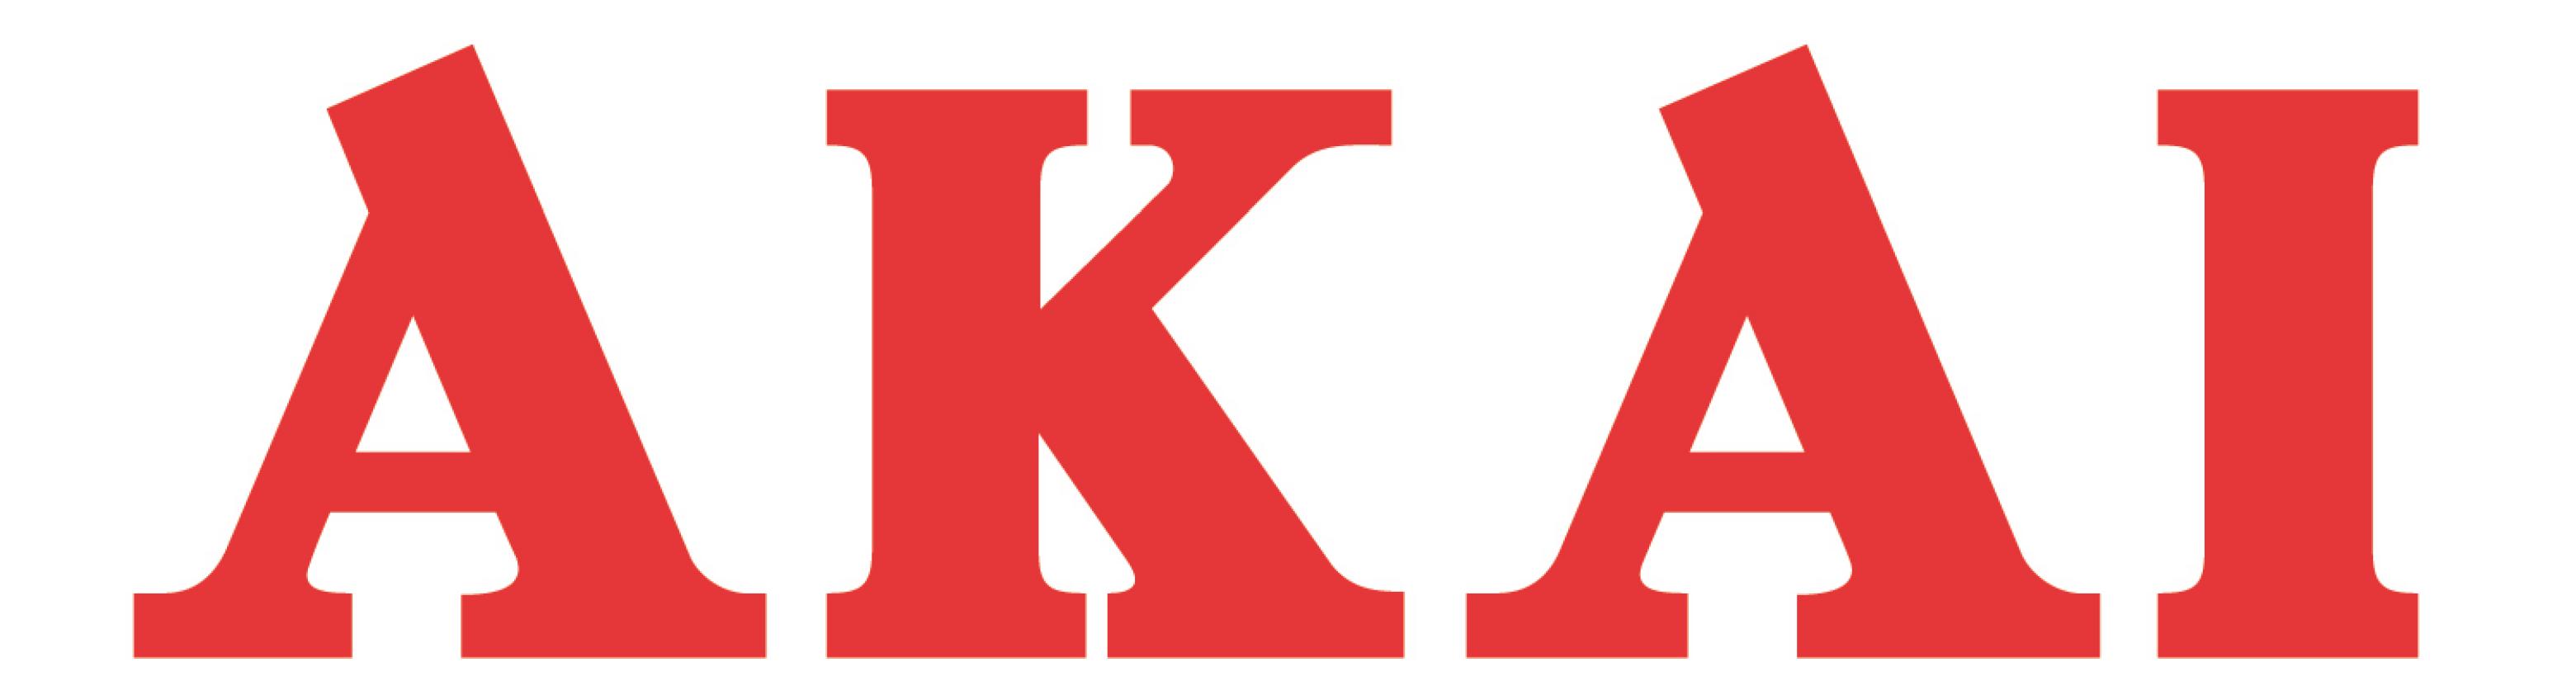 Akai Brand Logos Of Brands